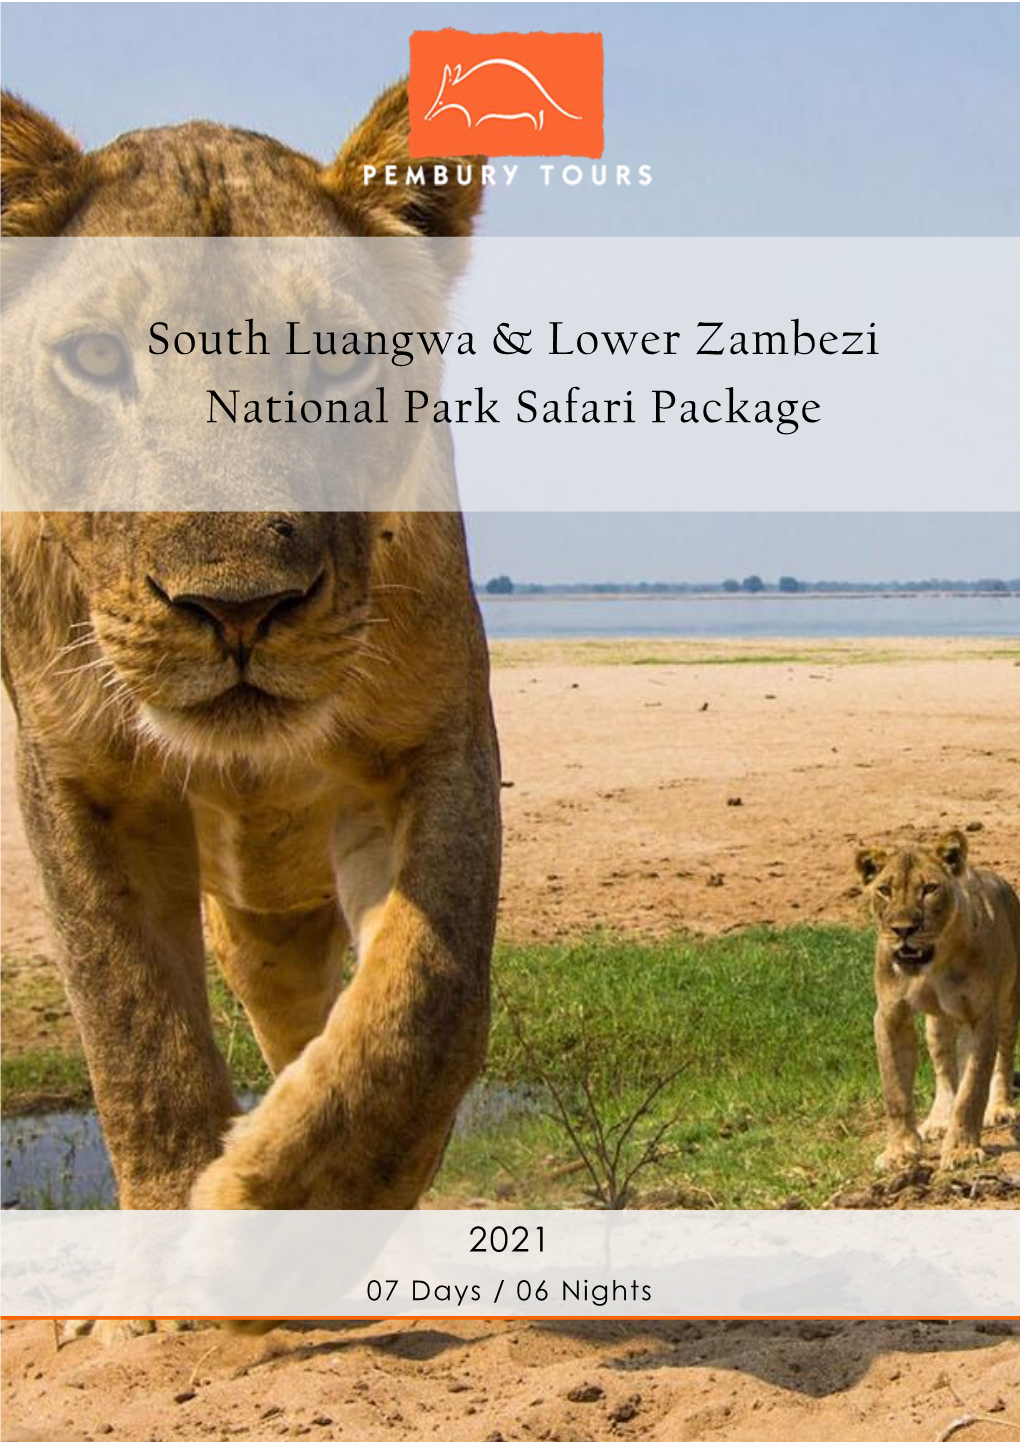 South Luangwa & Lower Zambezi National Park Safari Package